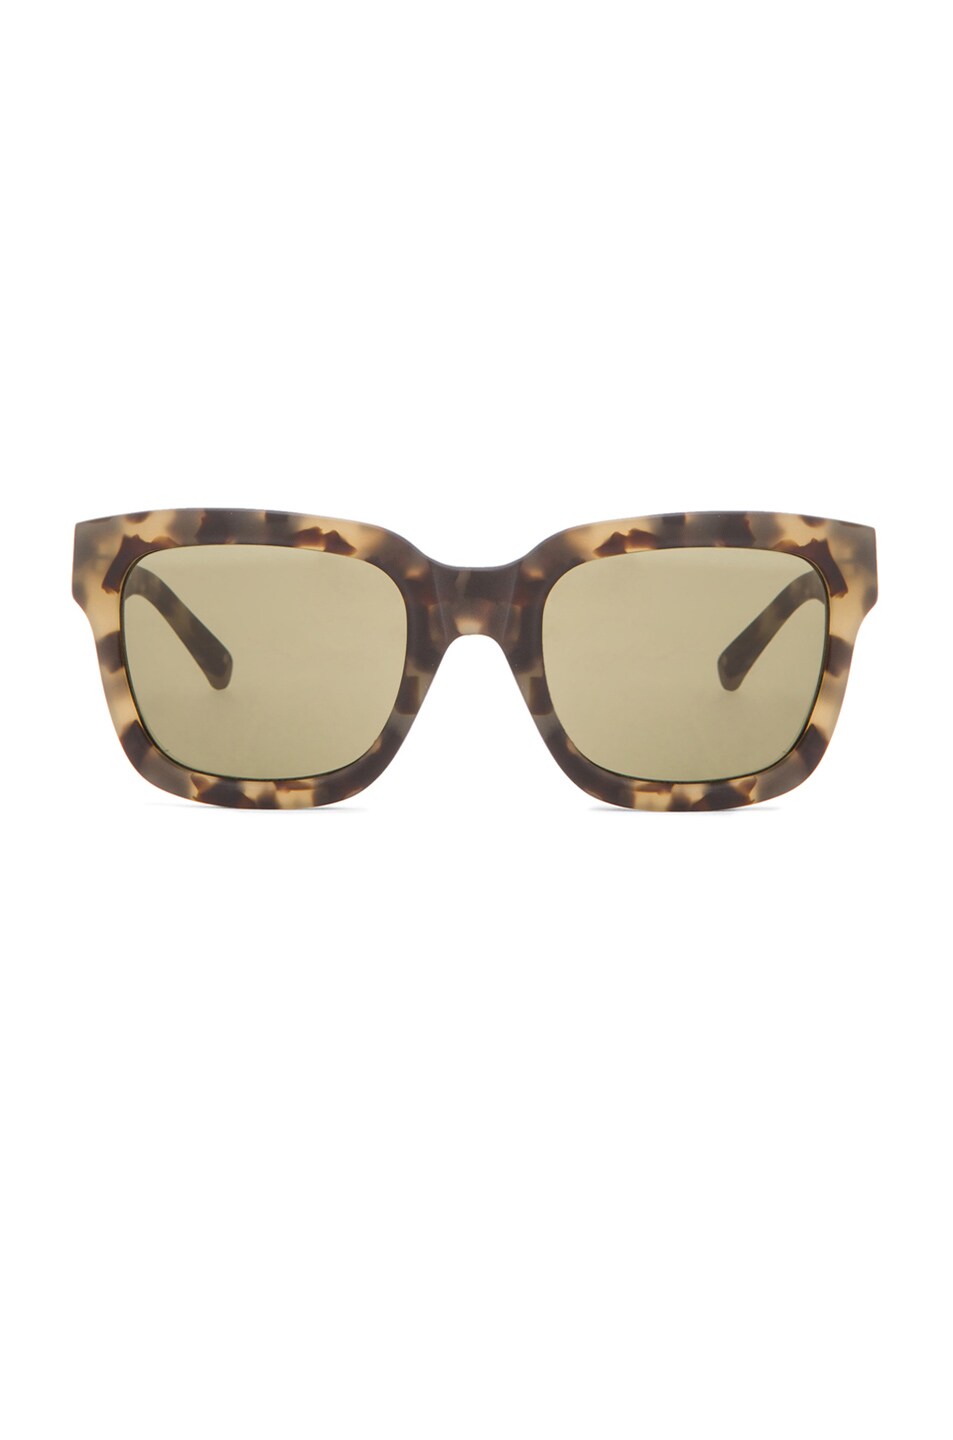 Image 1 of 3.1 phillip lim D-Frame Sunglasses in Khaki Tortoise